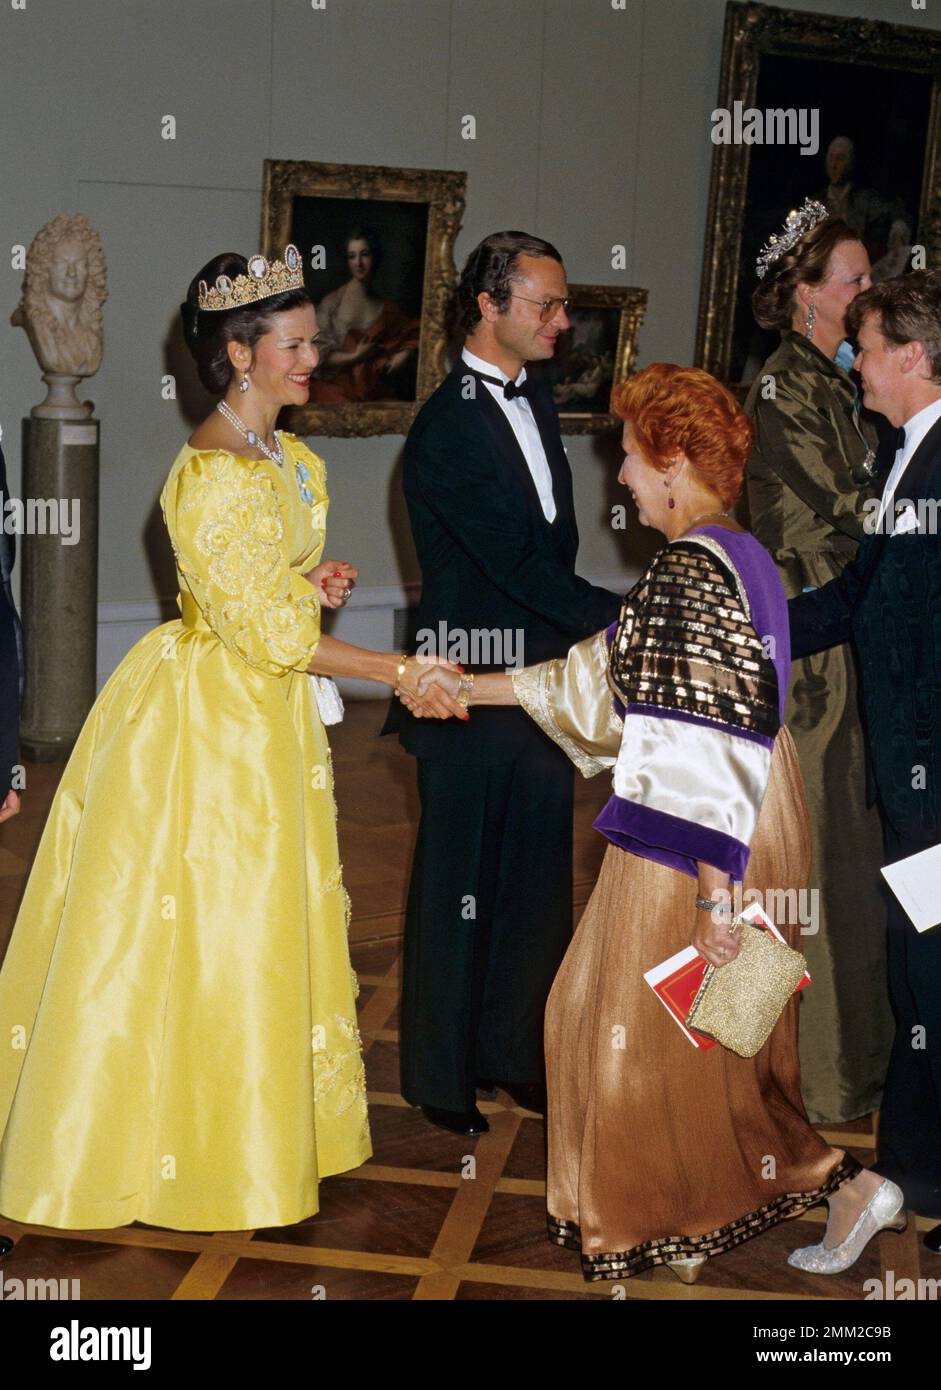 Carl XVI Gustaf, roi de Suède. Né le 30 avril 1946. Le roi Carl XVI Gustaf et la reine Silvia saluent la chanteuse d'opéra Kjerstin Dellert et son mari 1985. Banque D'Images